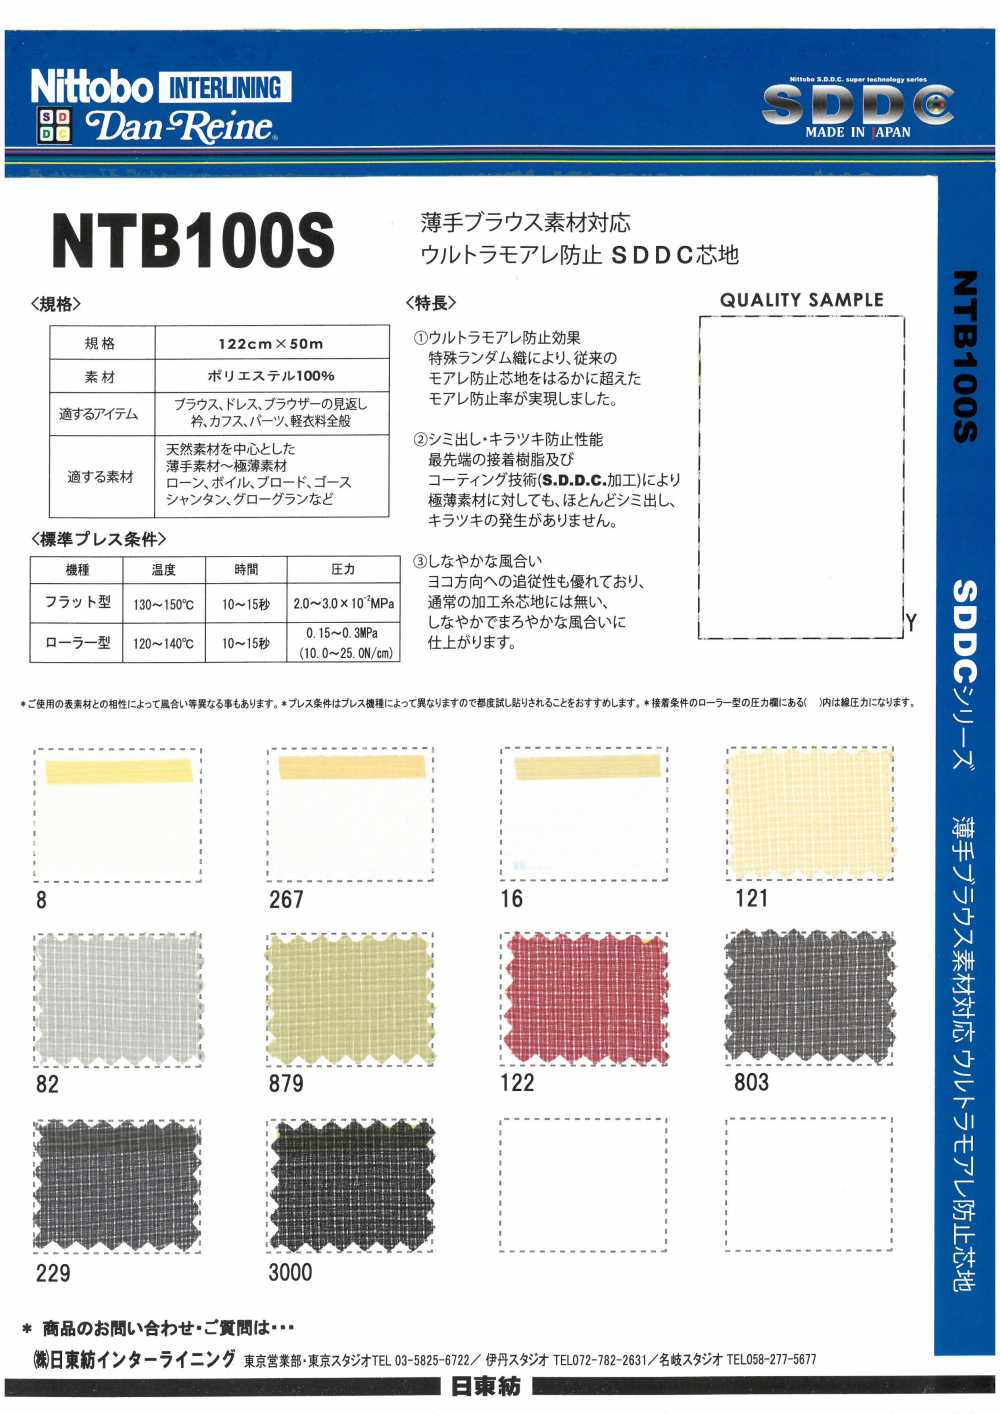 NTB100S Blusa Fina Compatível Com Ultra Moire Prevenção SDDC Interlining 15D[Entrelinha] Nittobo